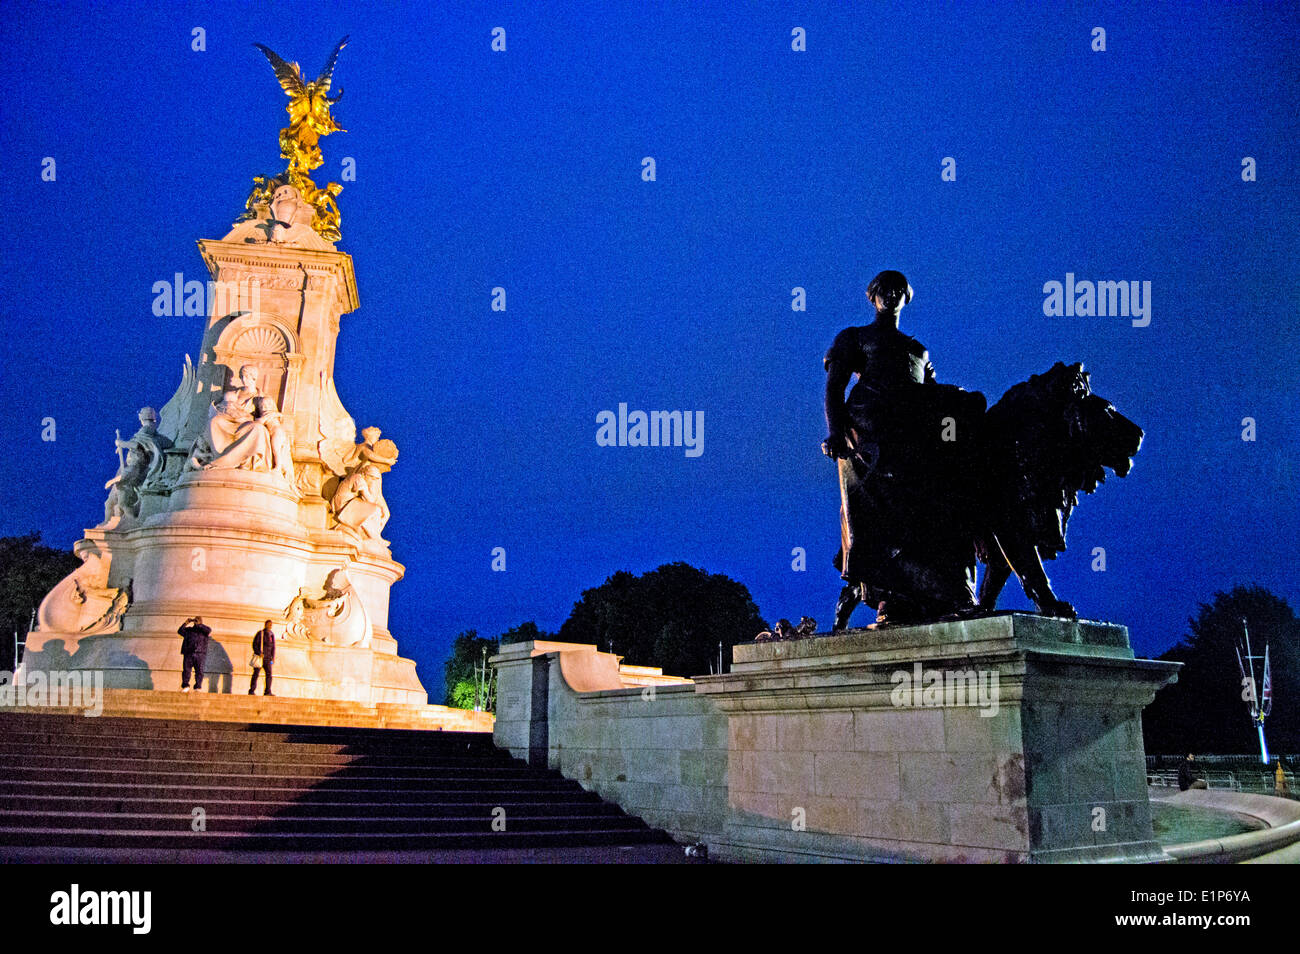 La regina Victoria Memorial di fronte a Buckingham Palace di notte, City of Westminster, Londra, Inghilterra, Regno Unito Foto Stock